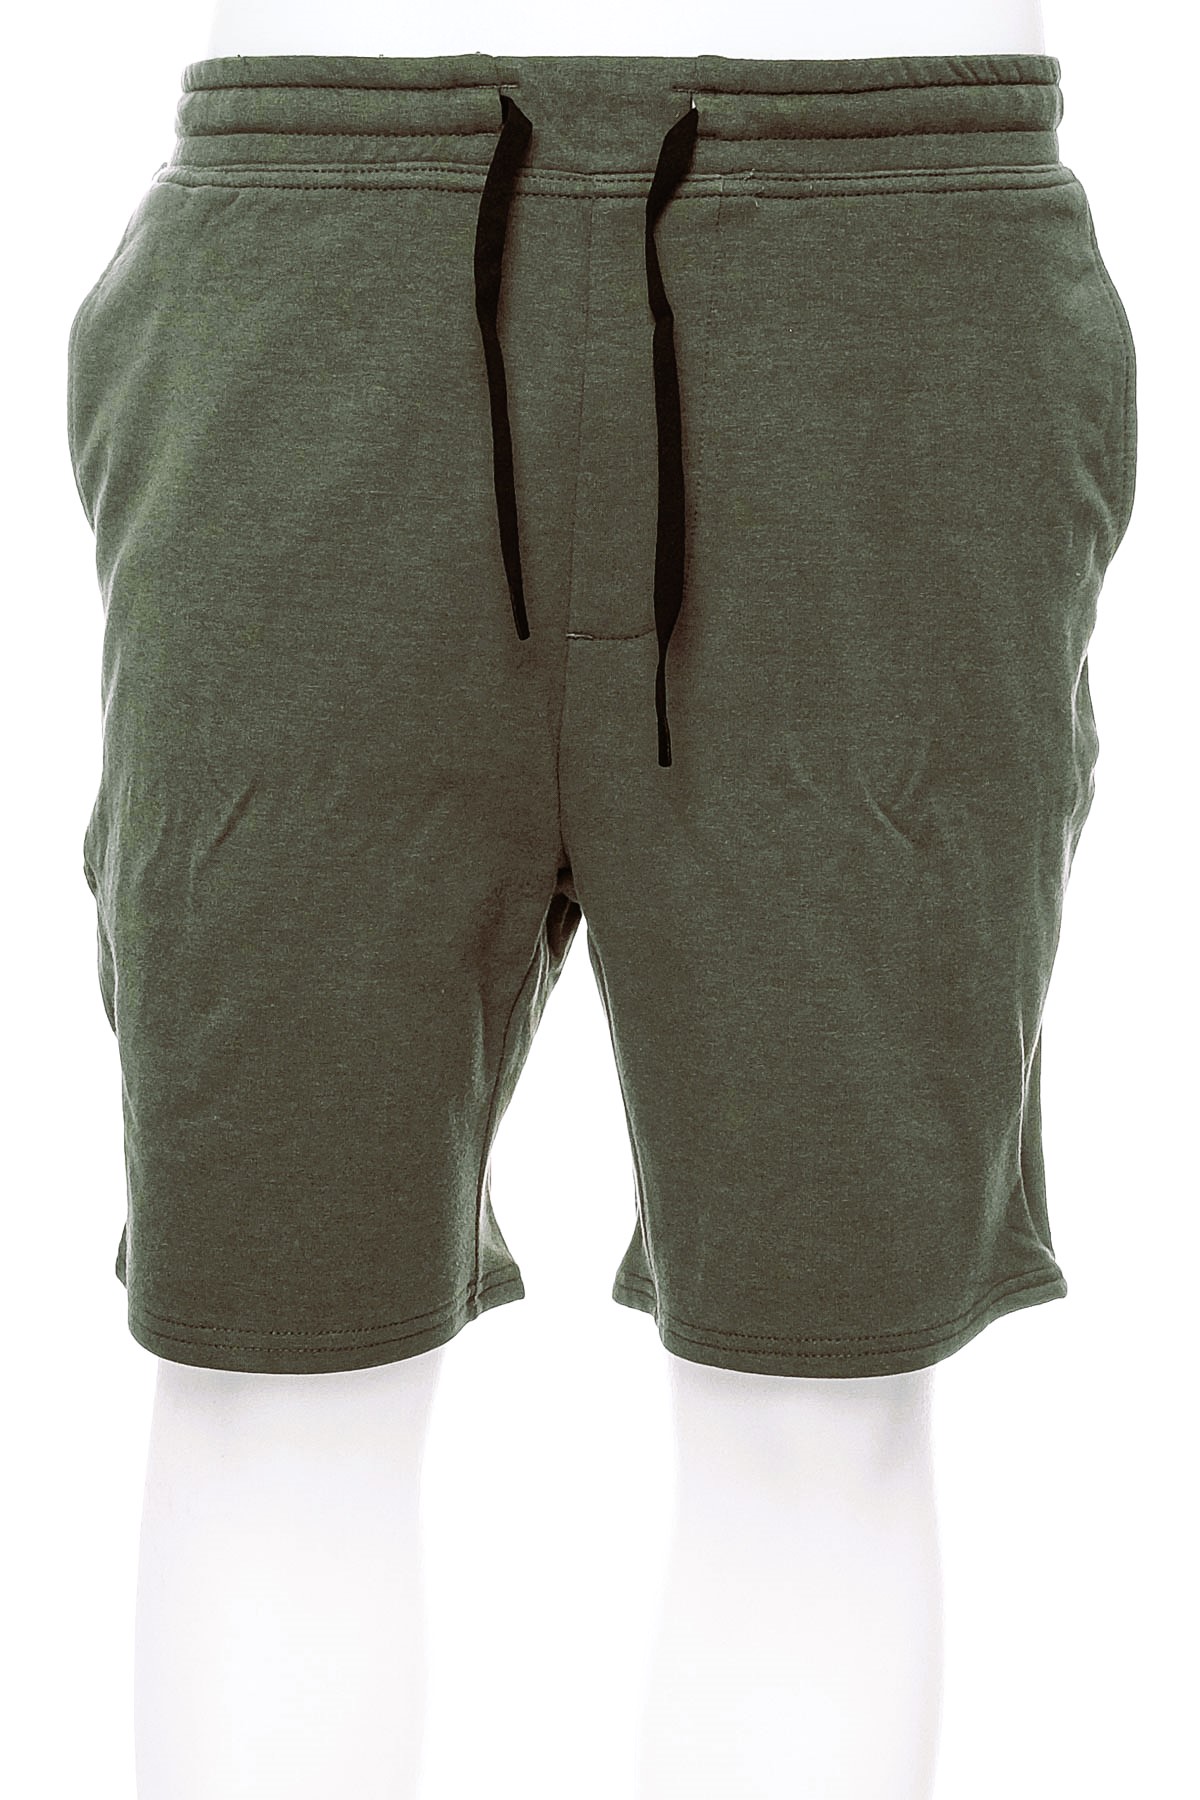 Pantaloni scurți bărbați - Stance - 0